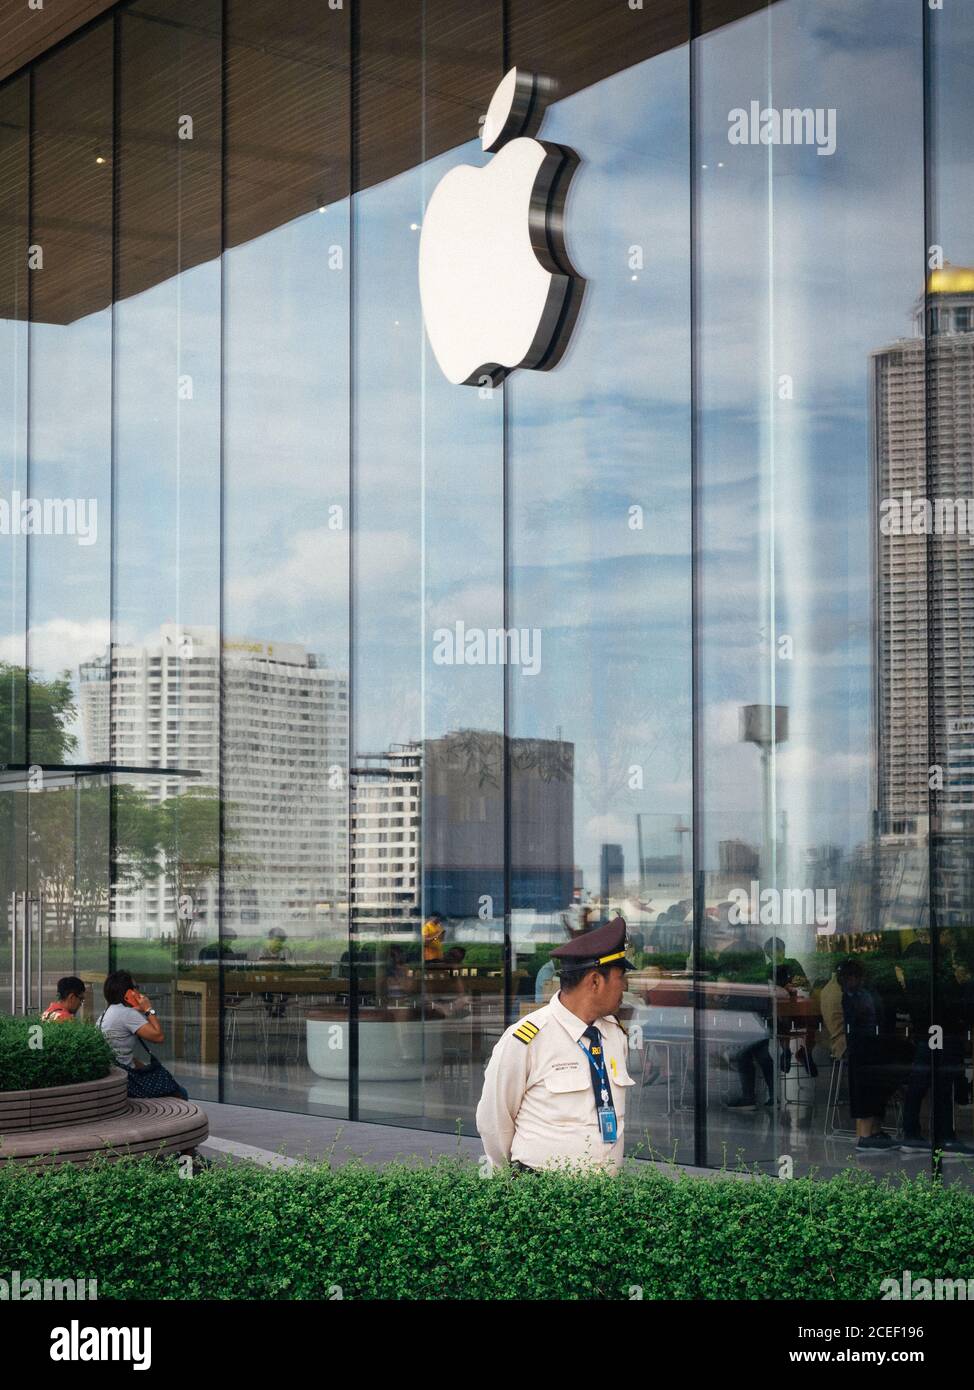 Bangkok, Thailand, Südostasien - der erste Apple Store Bangkok. Sicherheitsbeamter in Icon Siam, einem Einkaufszentrum am Ufer des Chao Phraya Flusses. Stockfoto